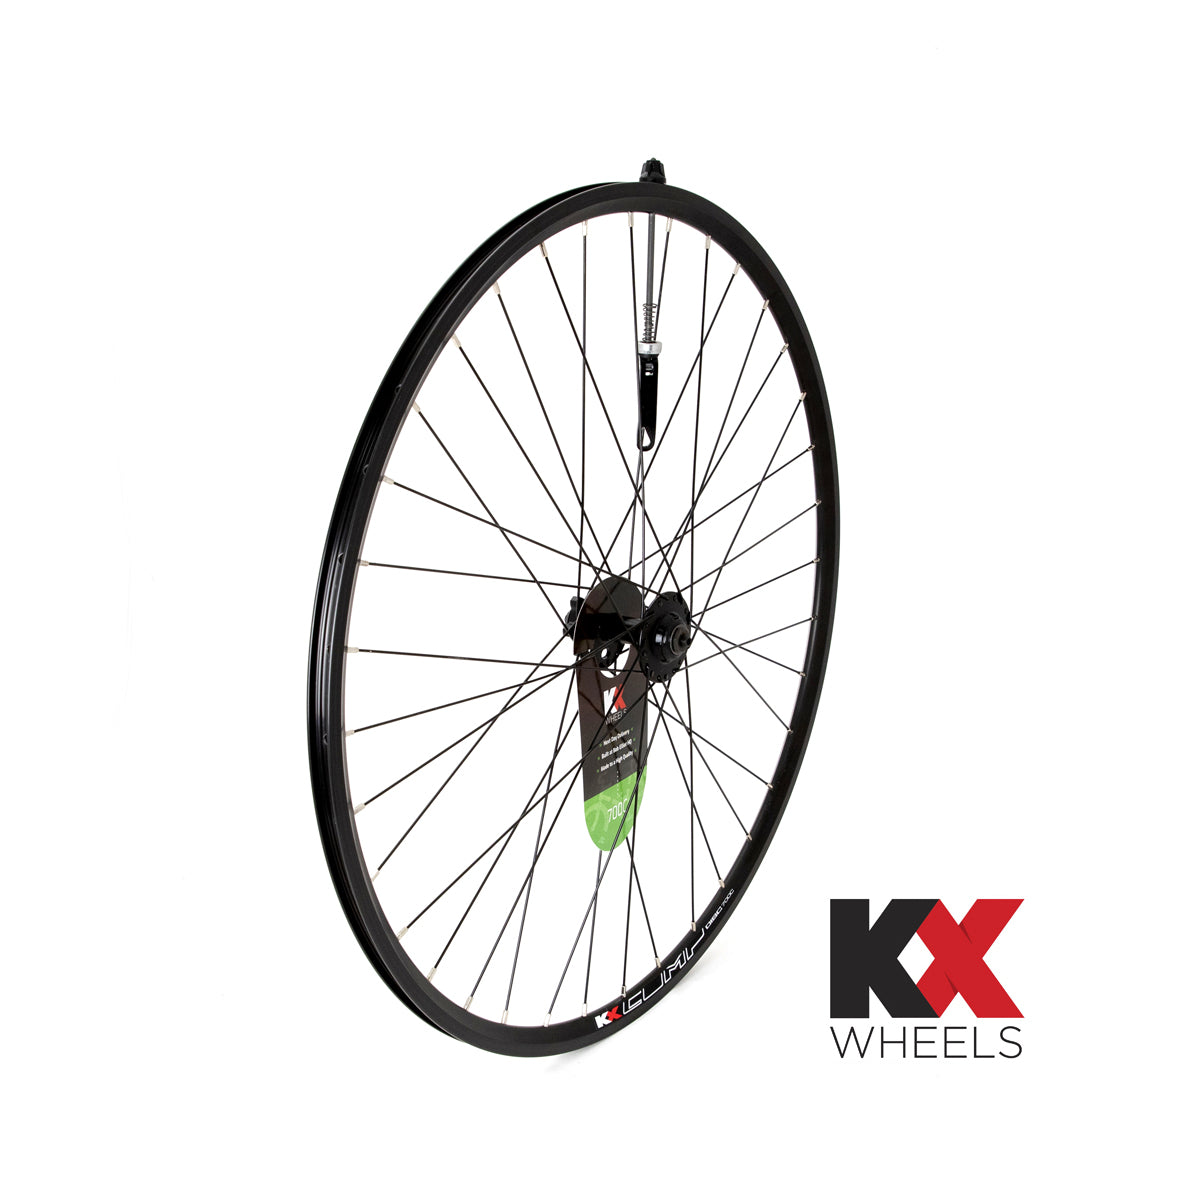 KX Wheels Double Wall QR Disc 700c Front Bike Wheel